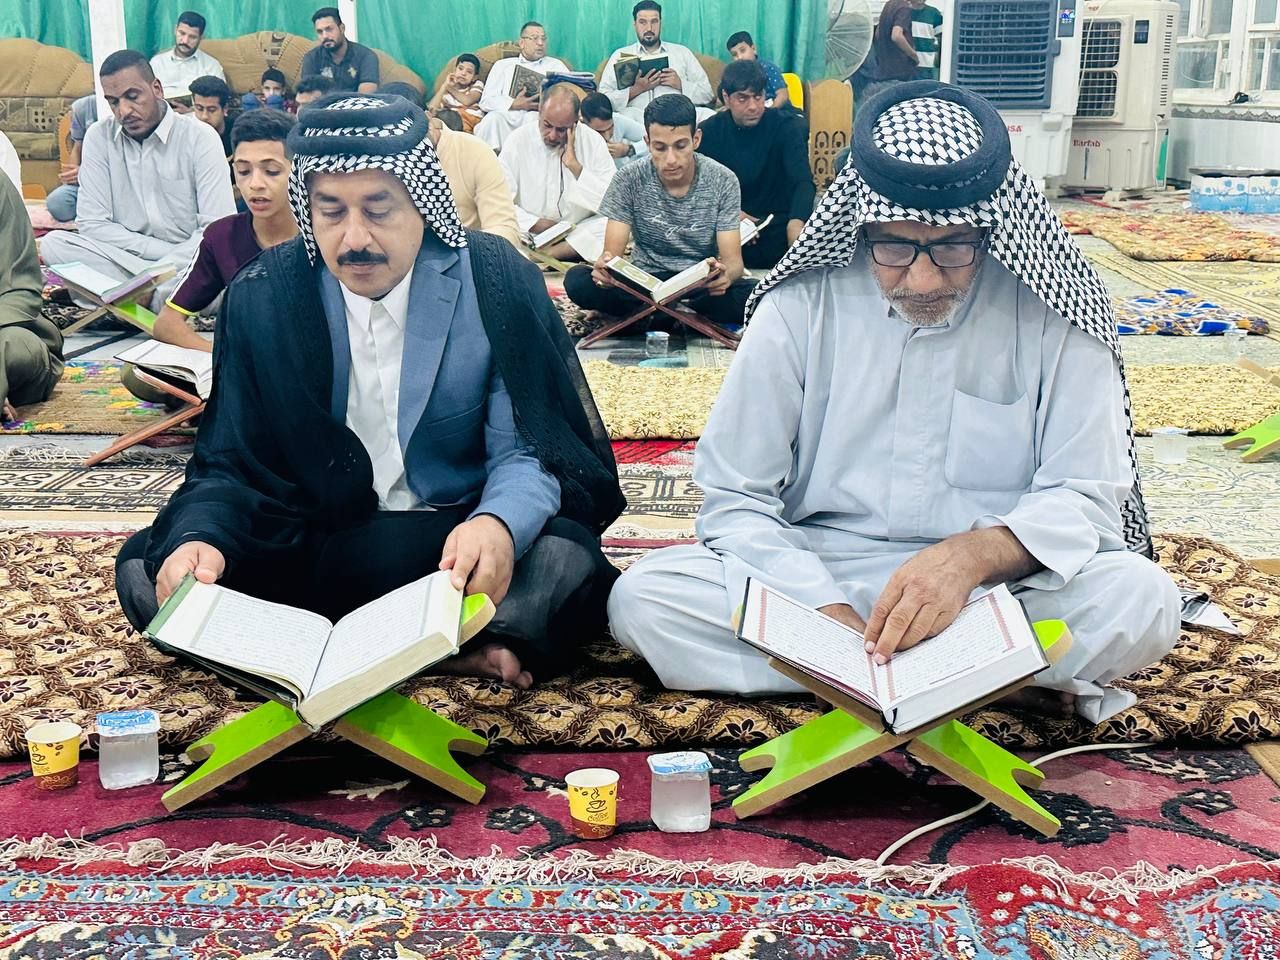 المَجمَع العلميّ يواصل إقامة ختماته القرآنية الموحدة في قضاء الهندية